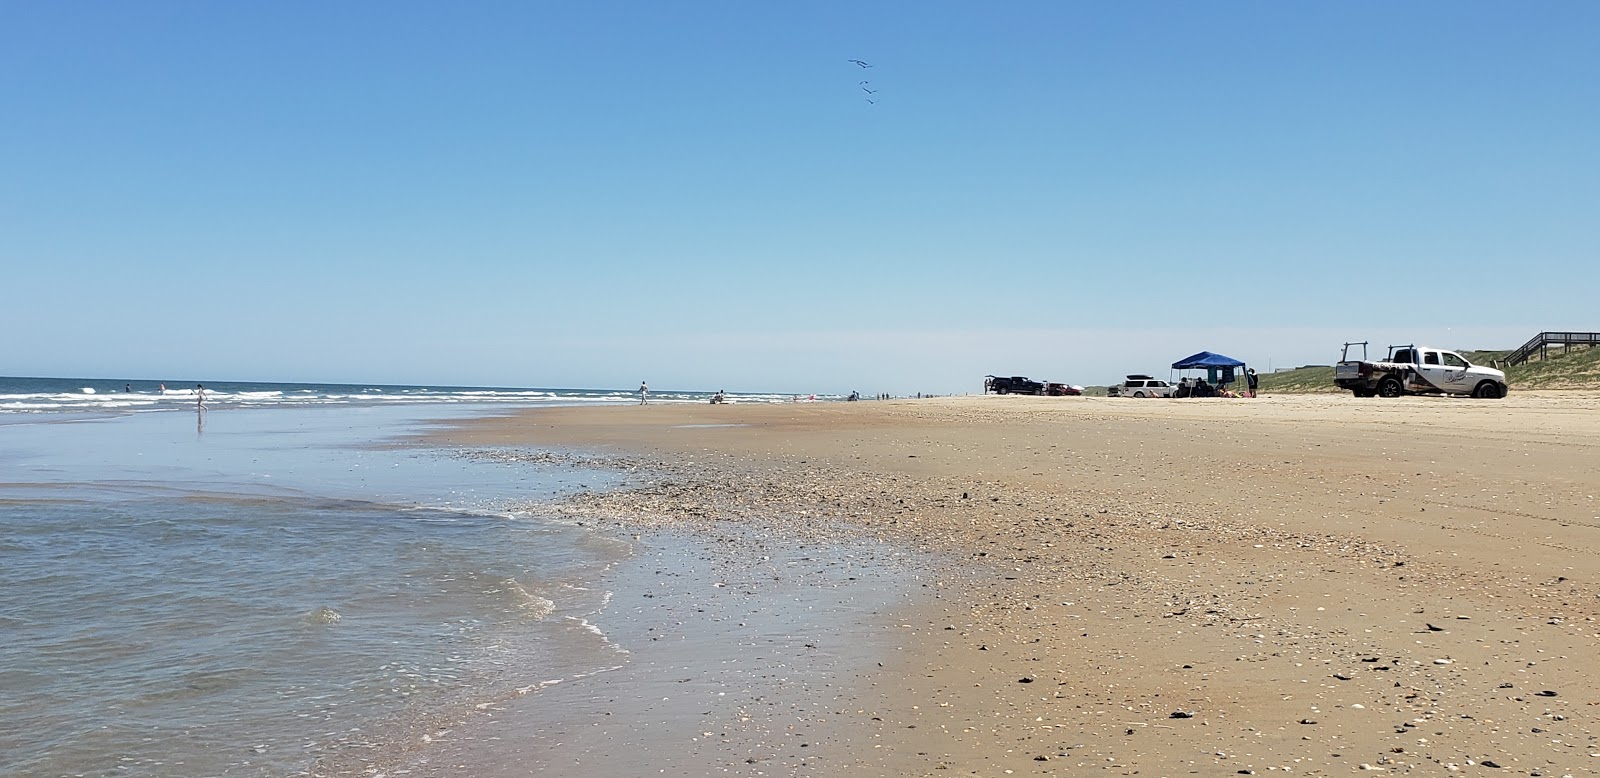 Zdjęcie Carova beach z powierzchnią jasny piasek